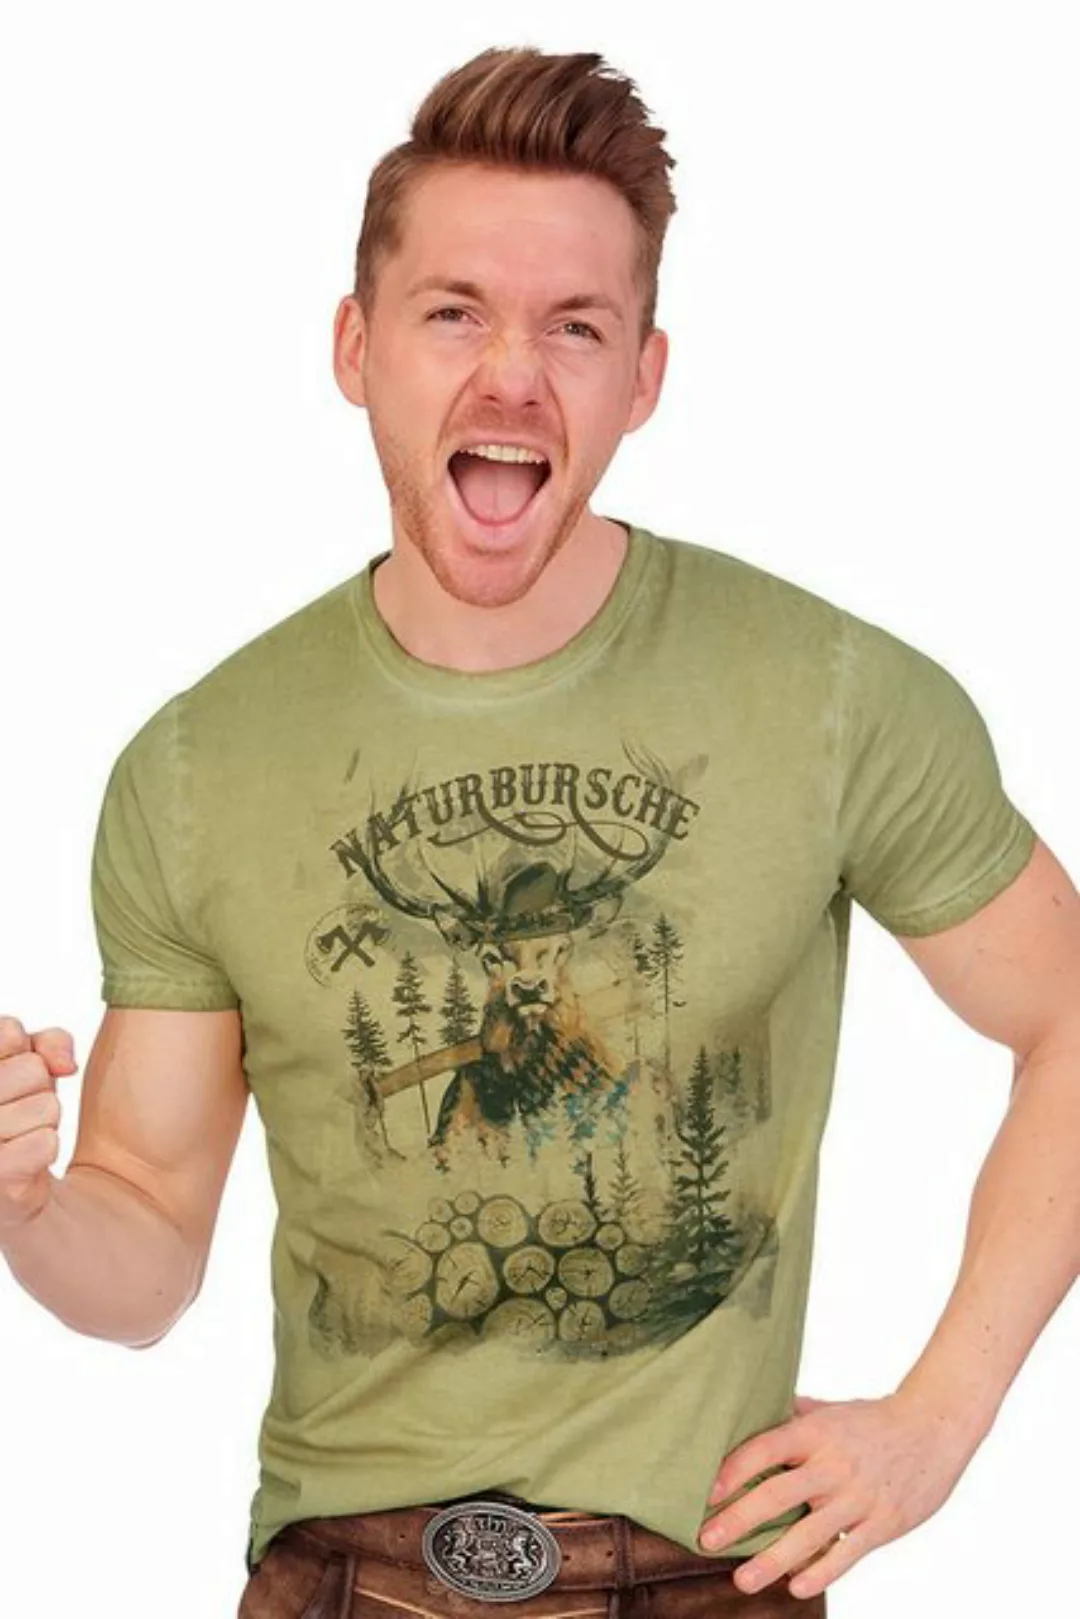 MarJo Trachtenshirt Trachtenshirt Herren - GUIDO - hellgrau, sand antik günstig online kaufen